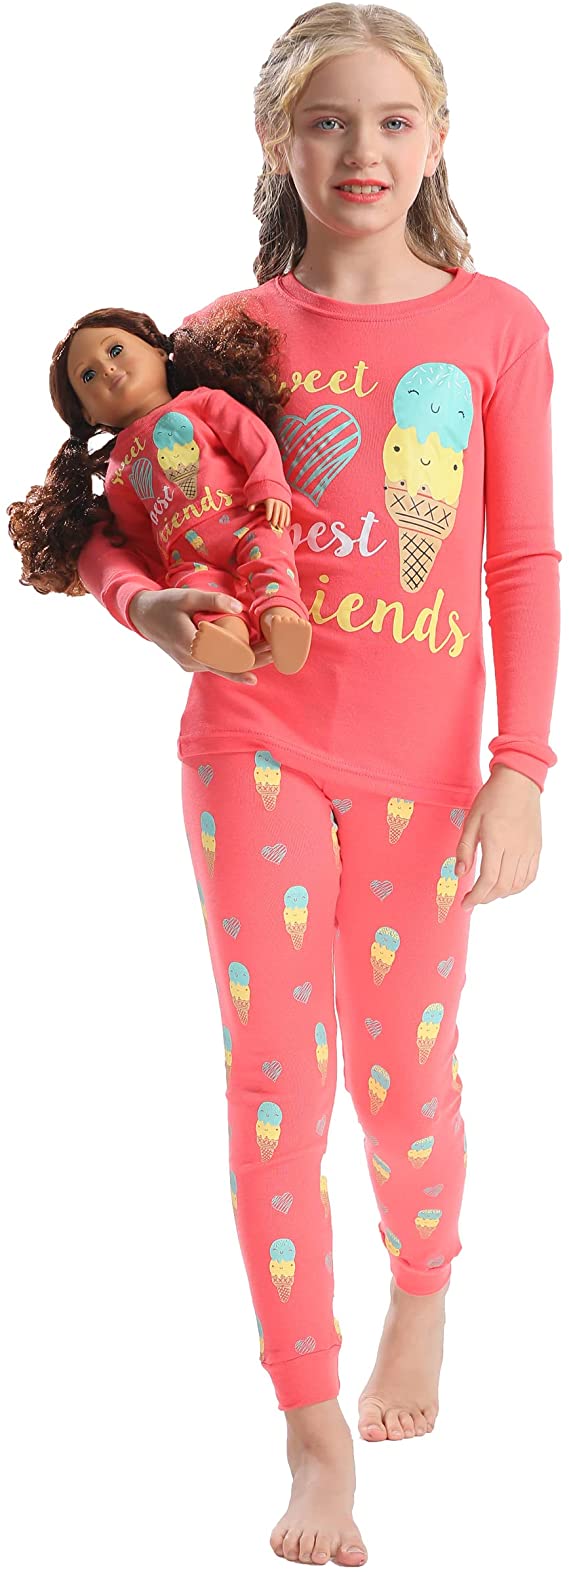 Babyroom Girls Matching Doll&Toddler 4 Piece Cotton Pajamas Toddler Unicorn Sleepwear